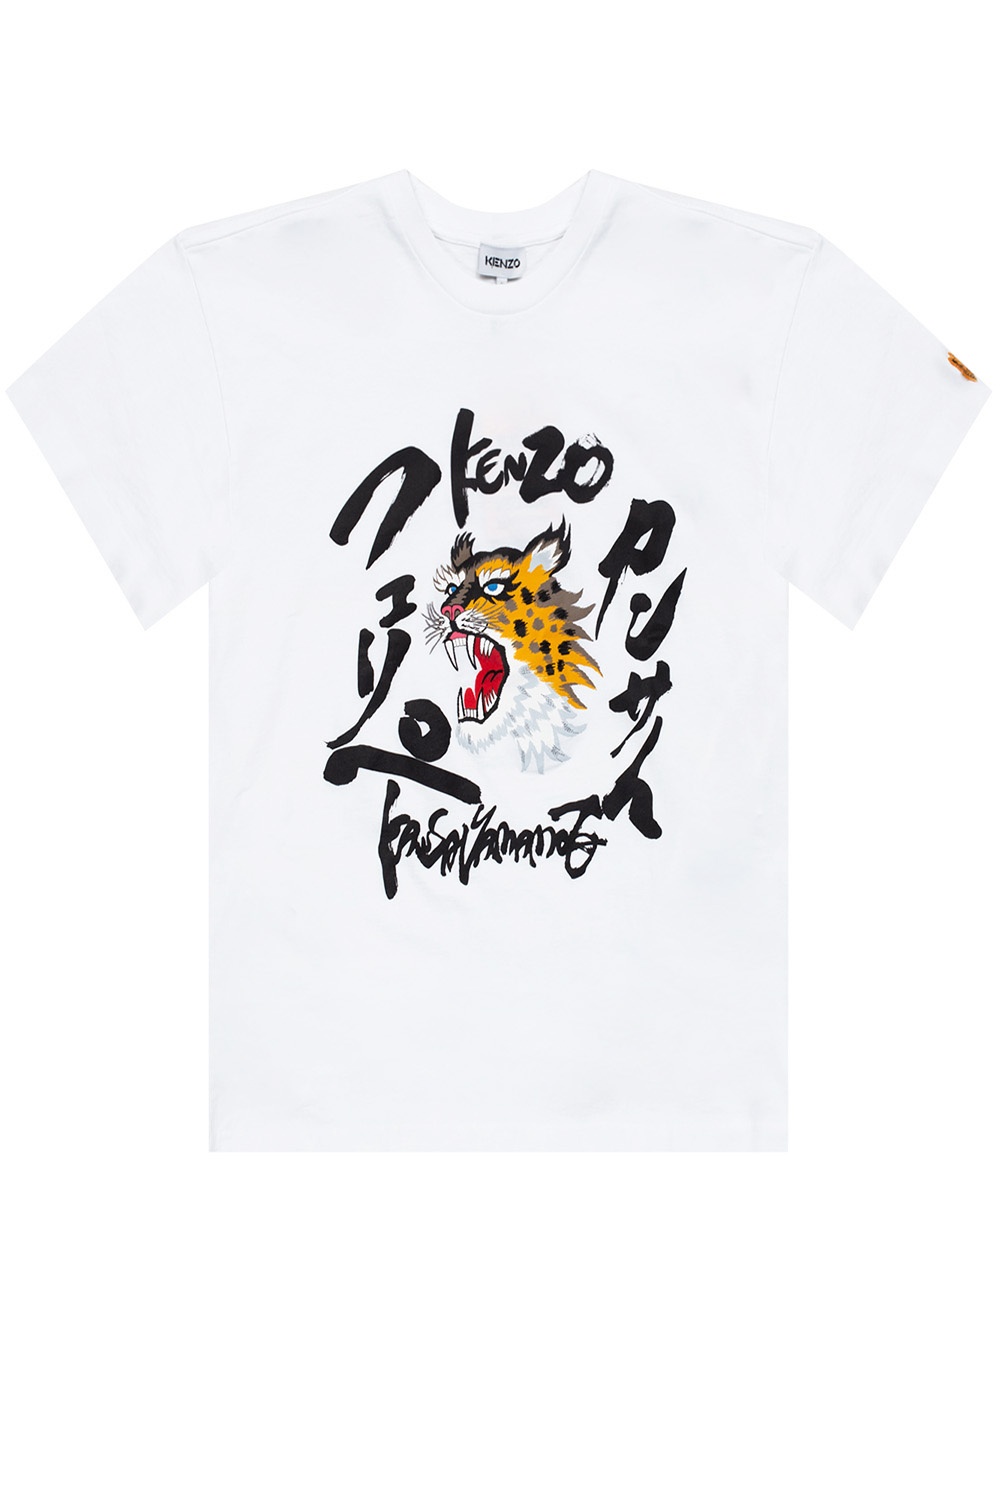 Kenzo Leopard Print Kansai Yamamoto Collab T-Shirt - T-Shirts from